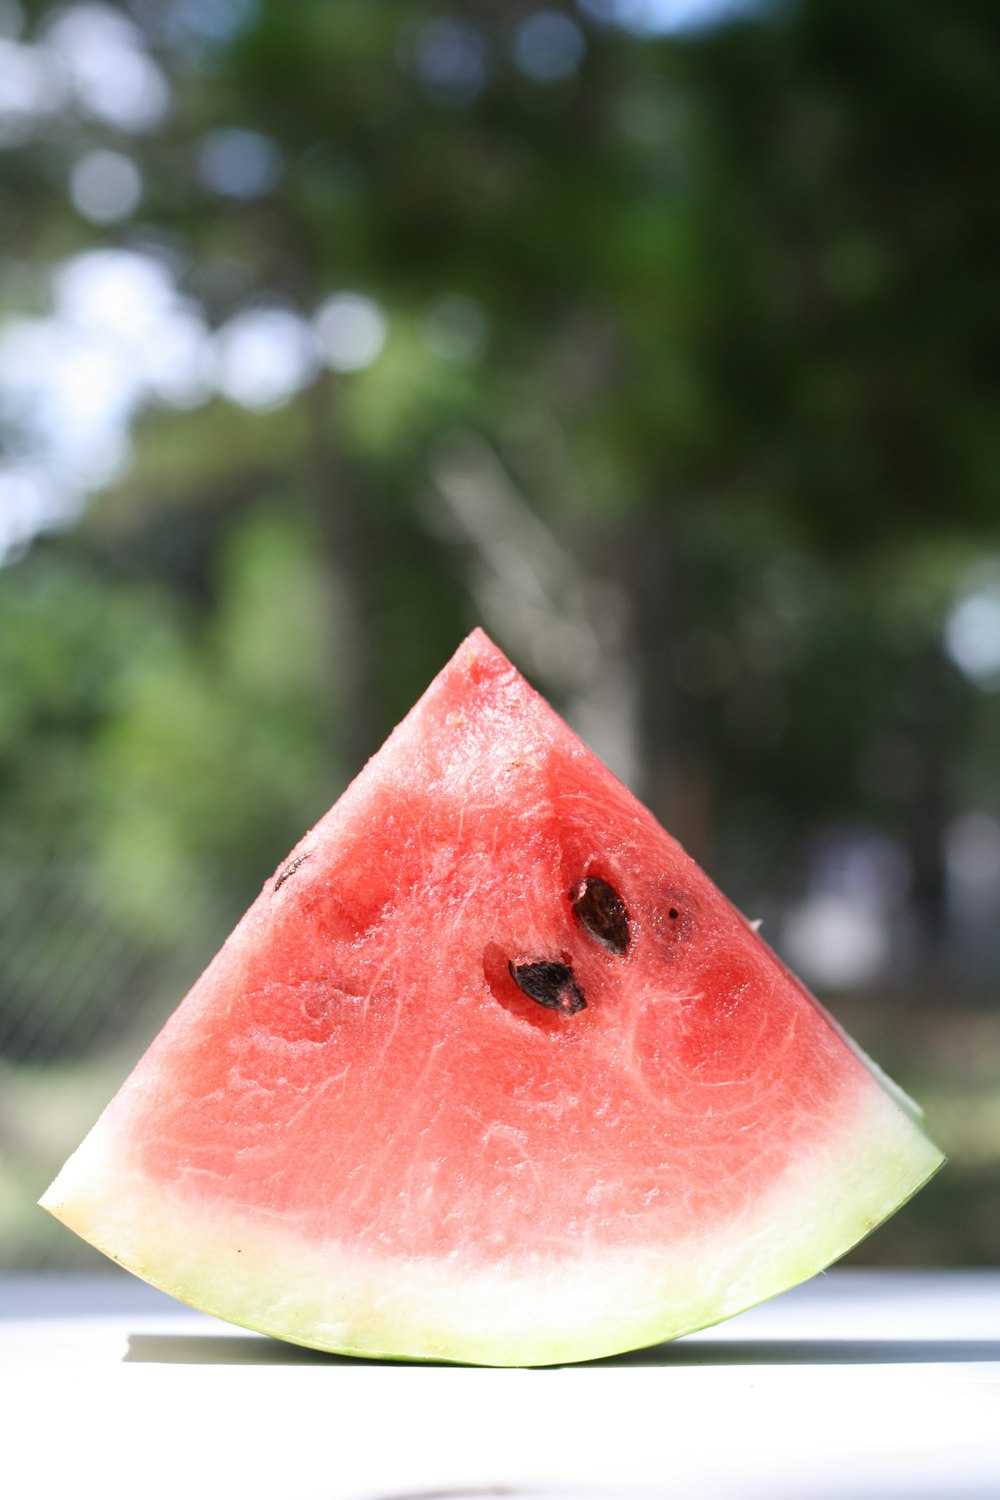 red sliced watermelon in tilt shift lens